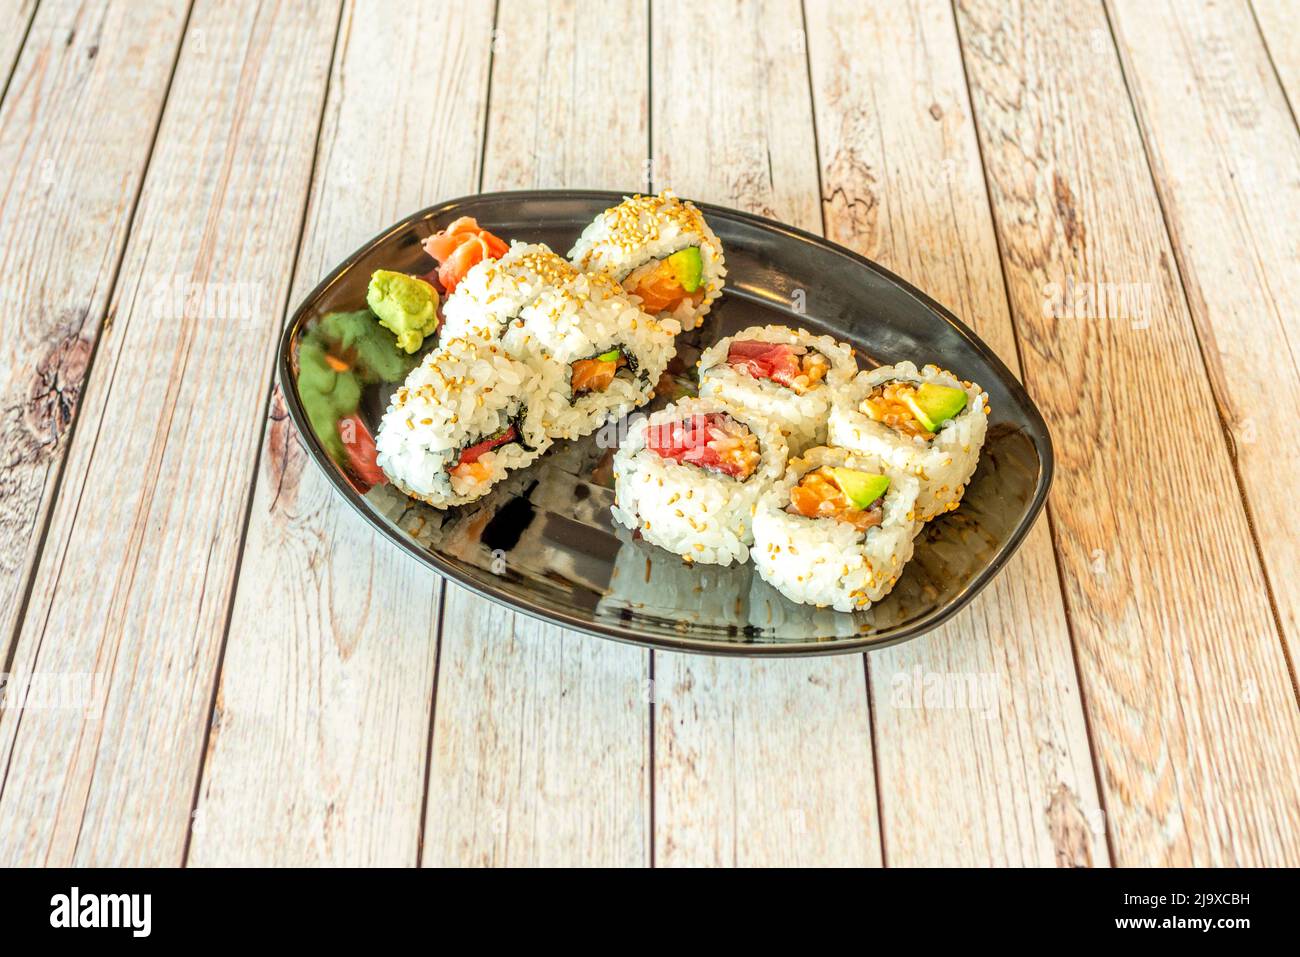 Sushi californien à base d'uramaki avec thon rouge, avocat, saumon norvégien, wasabi, algues nori et riz japonais Banque D'Images